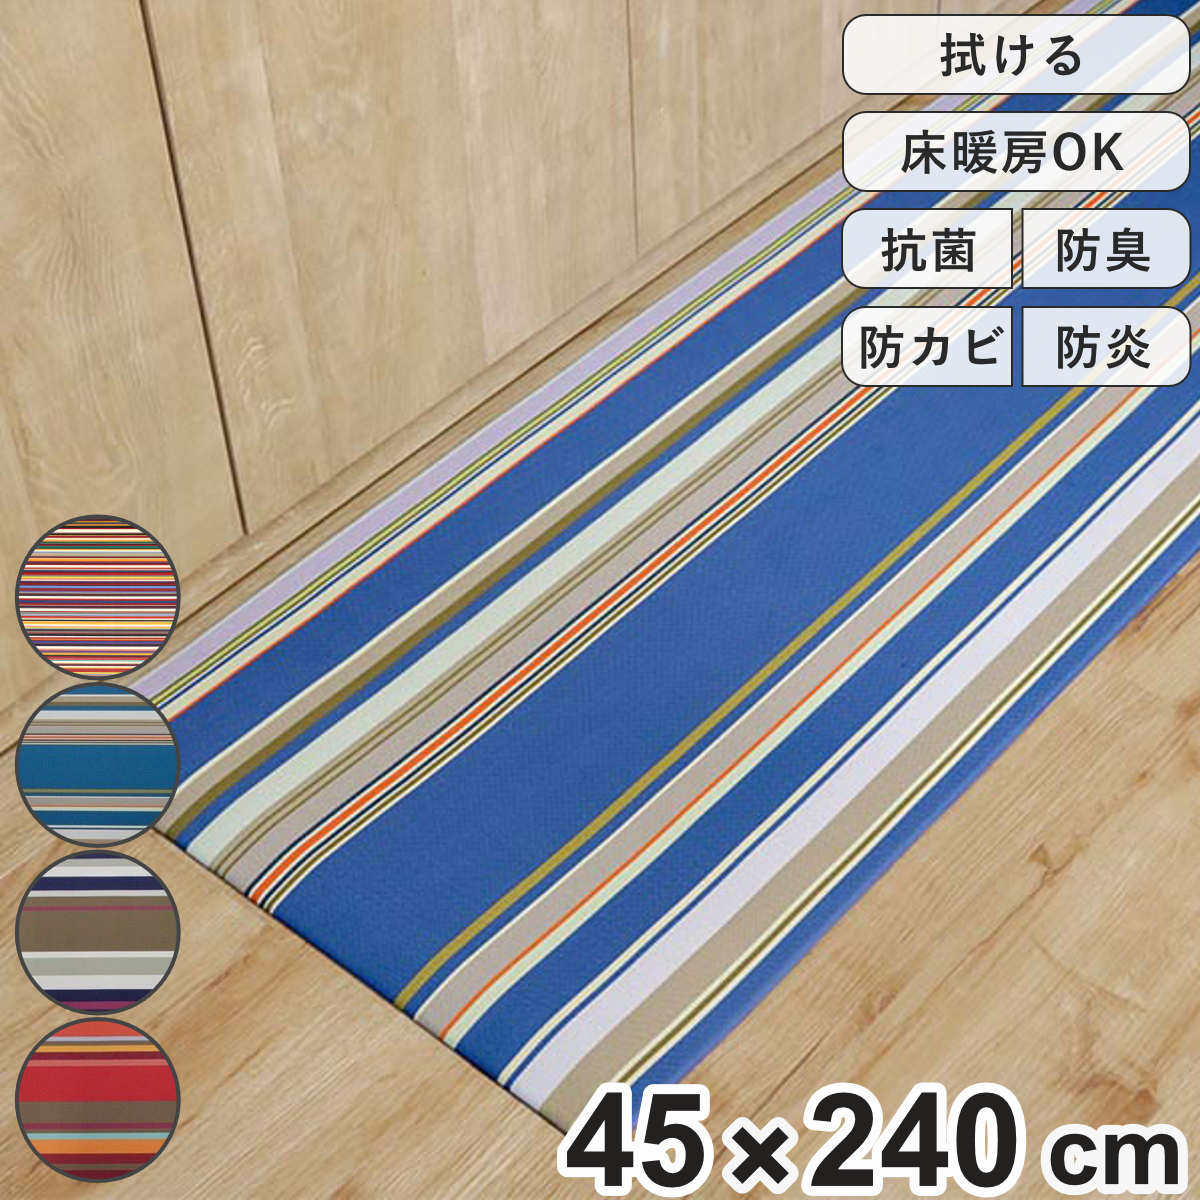 キッチンマット 45×240cm PVC 拭けるキッチンマット レ・トワール・デュ・ソレイユ